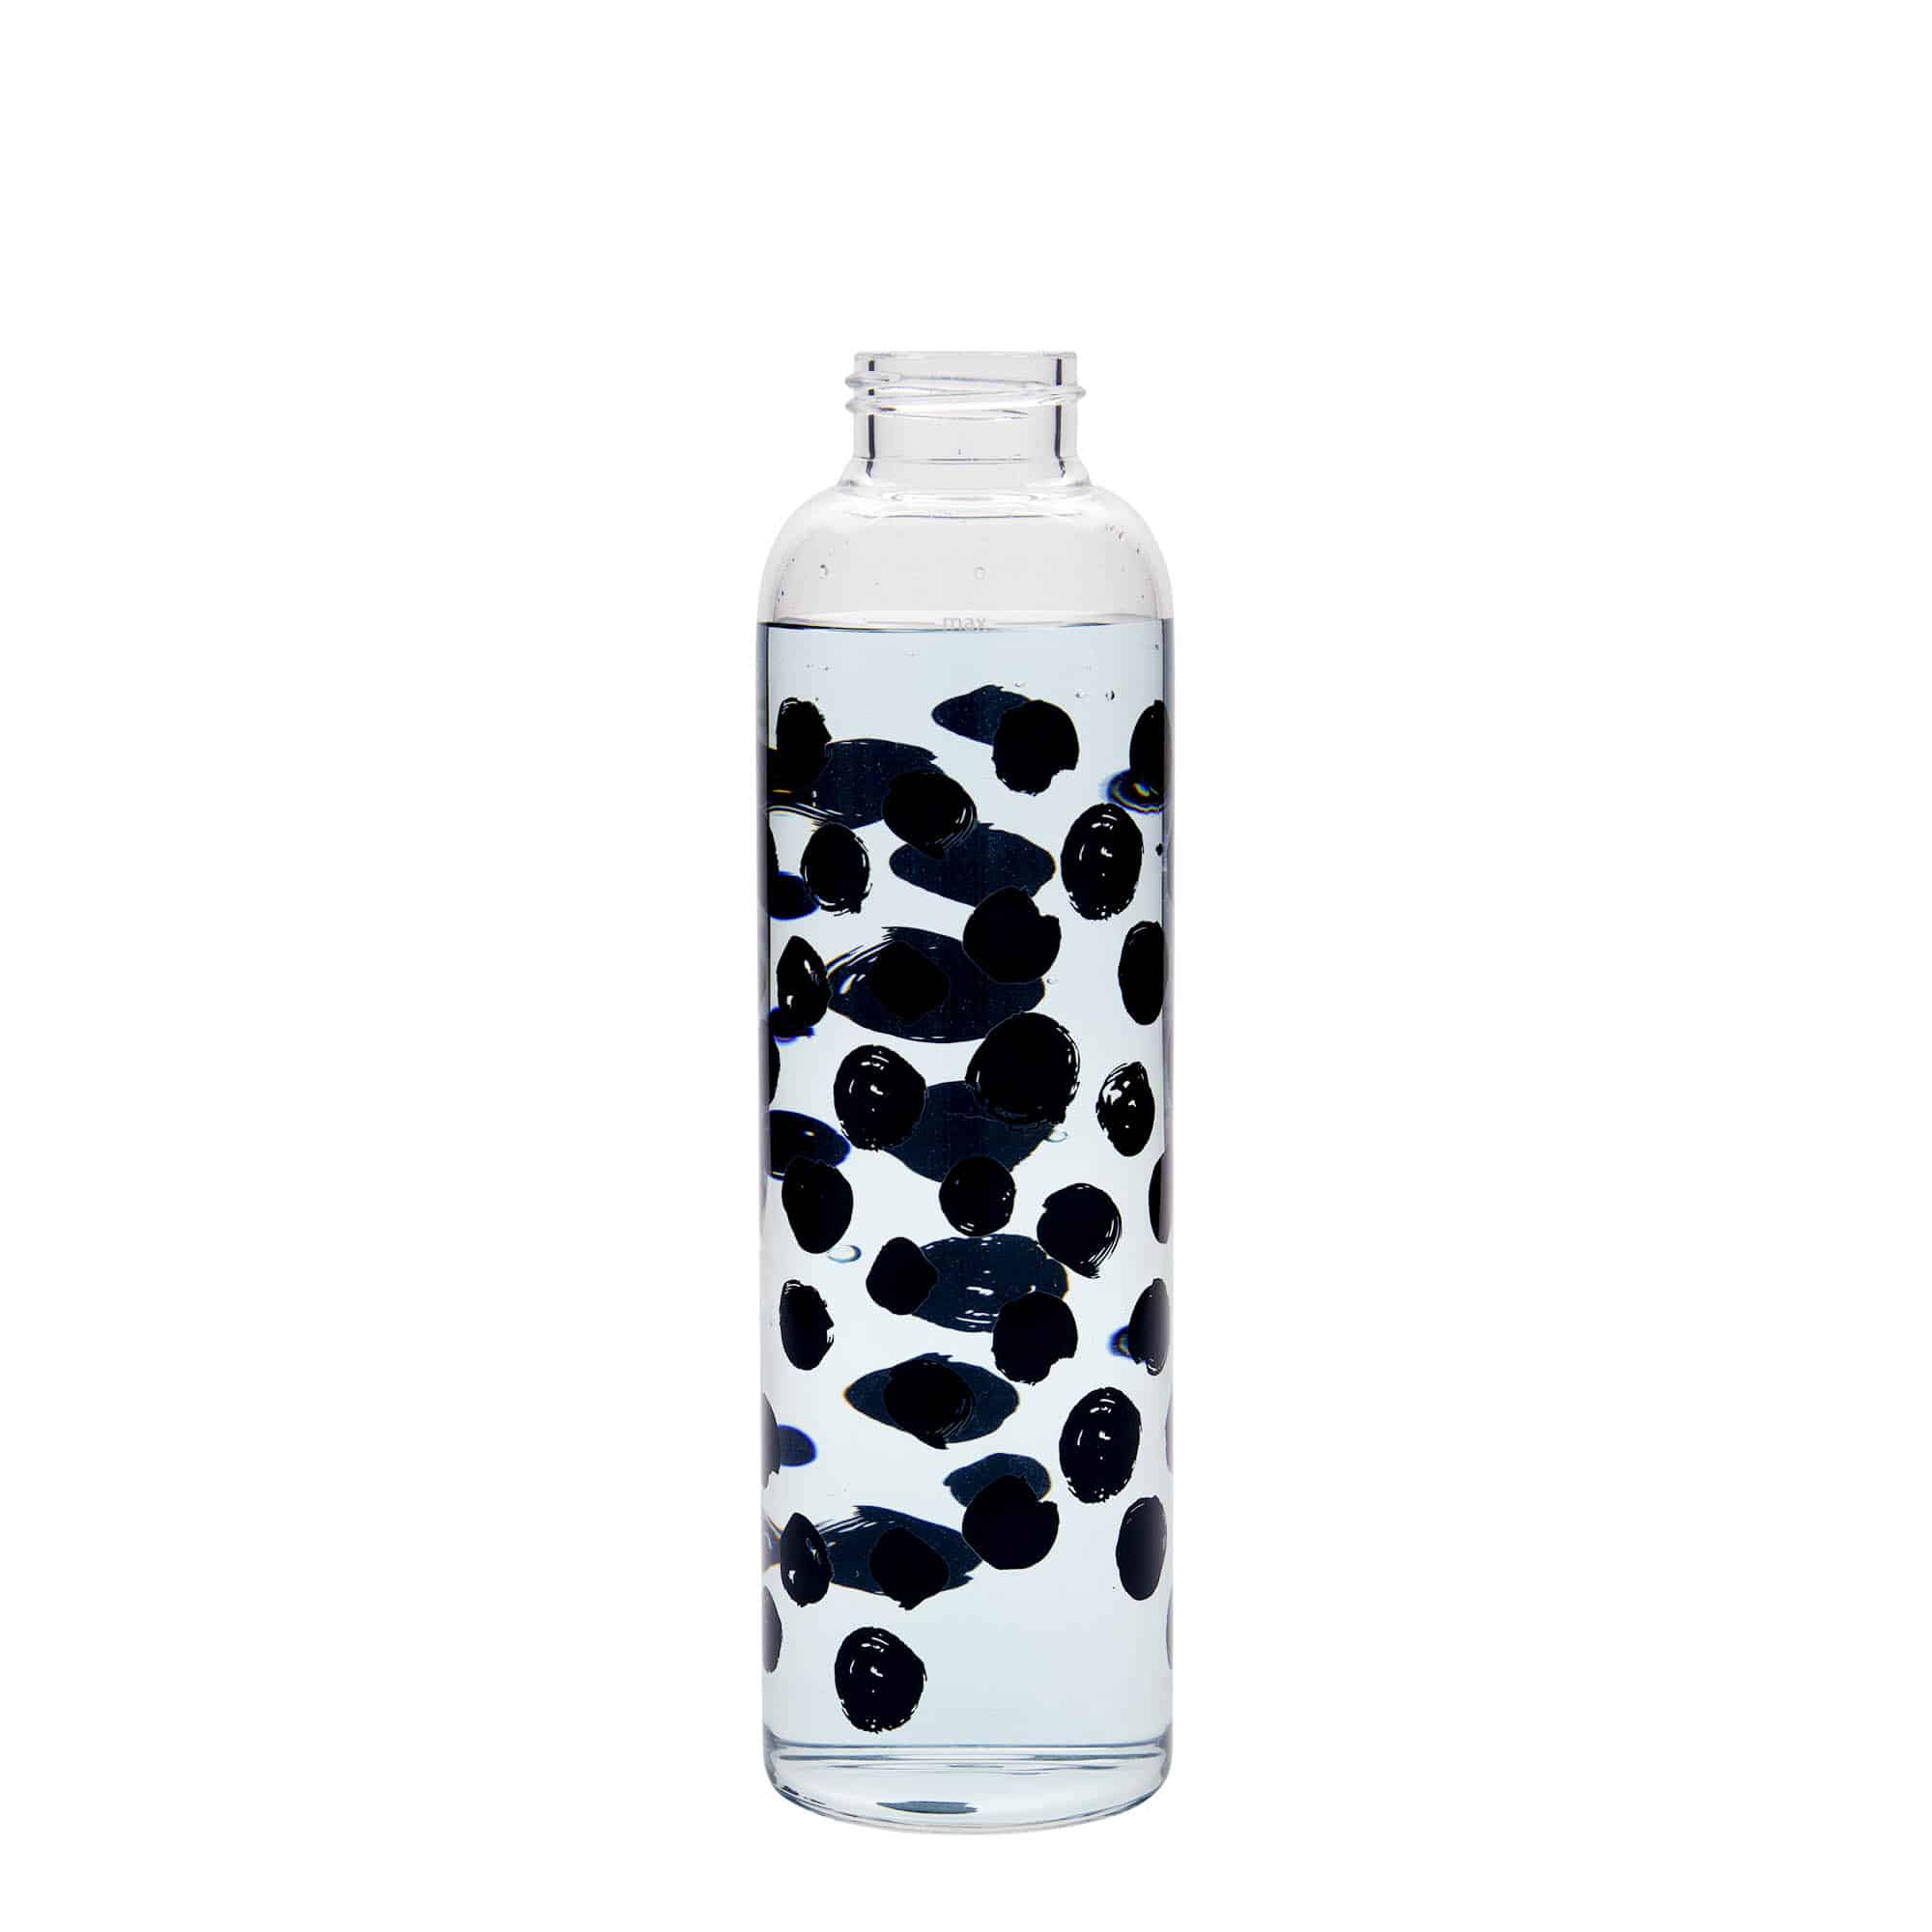 500 ml drikkeflaske 'Perseus', motiv: Sorte prikker, åbning: Skruelåg